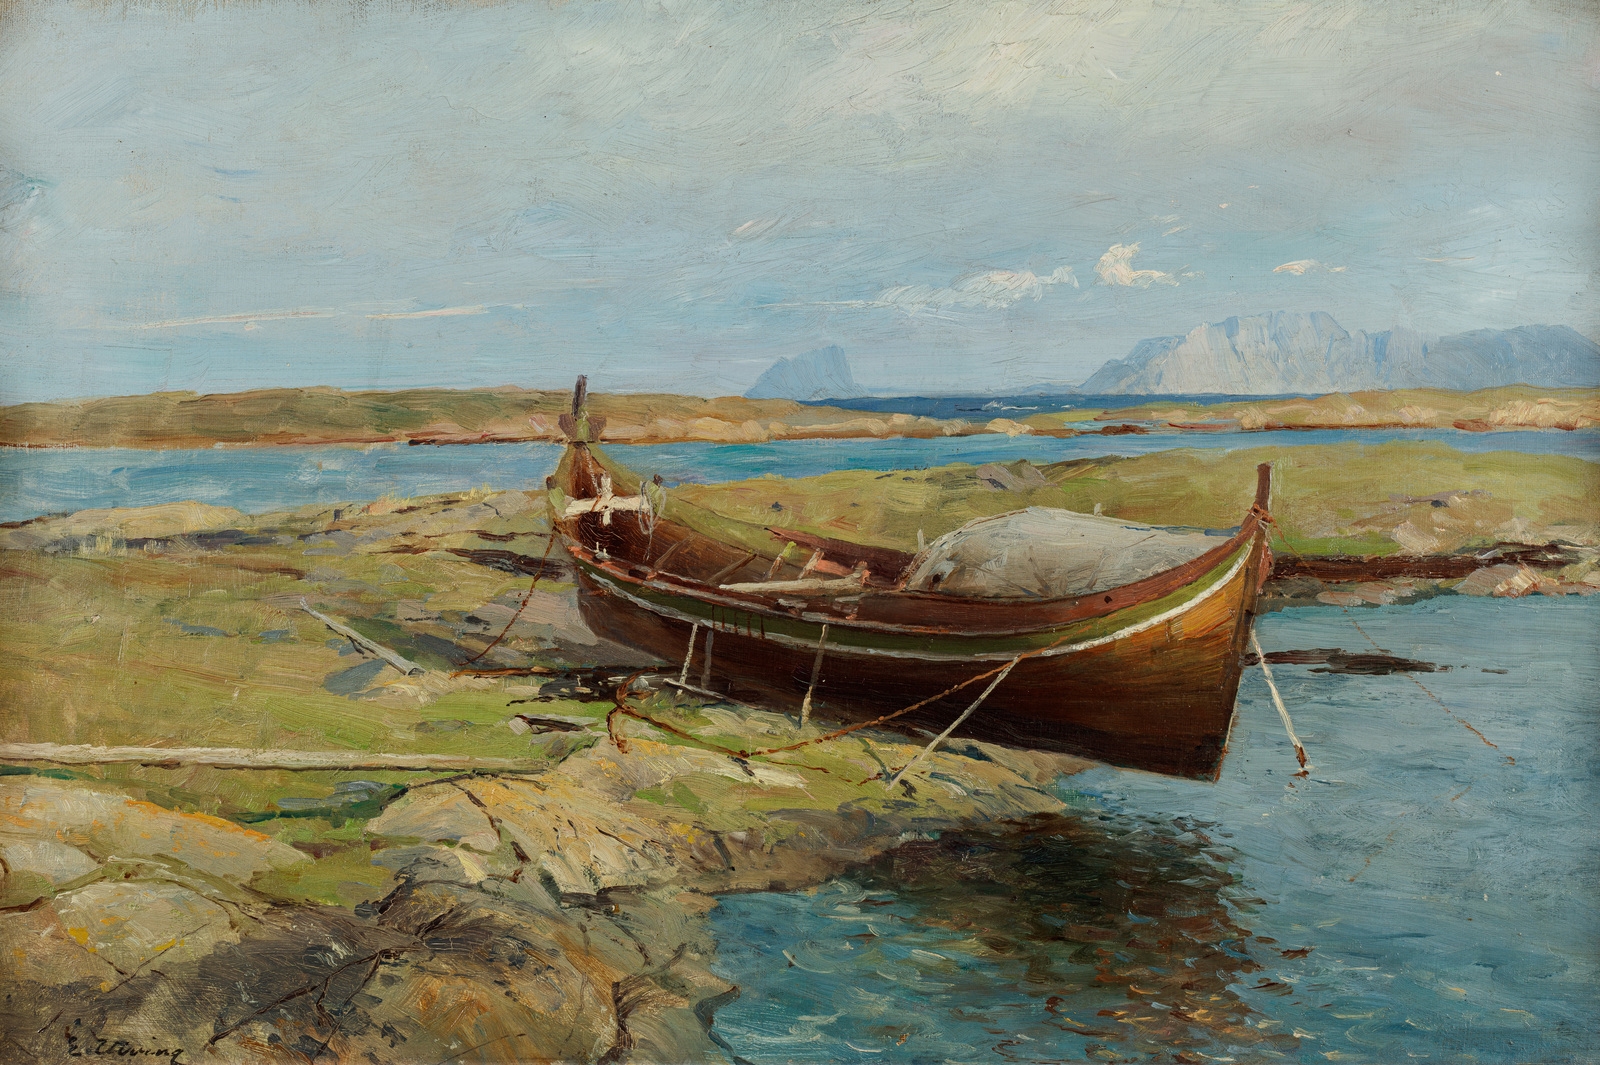 "Nordlandsbåt" by Even Ulving